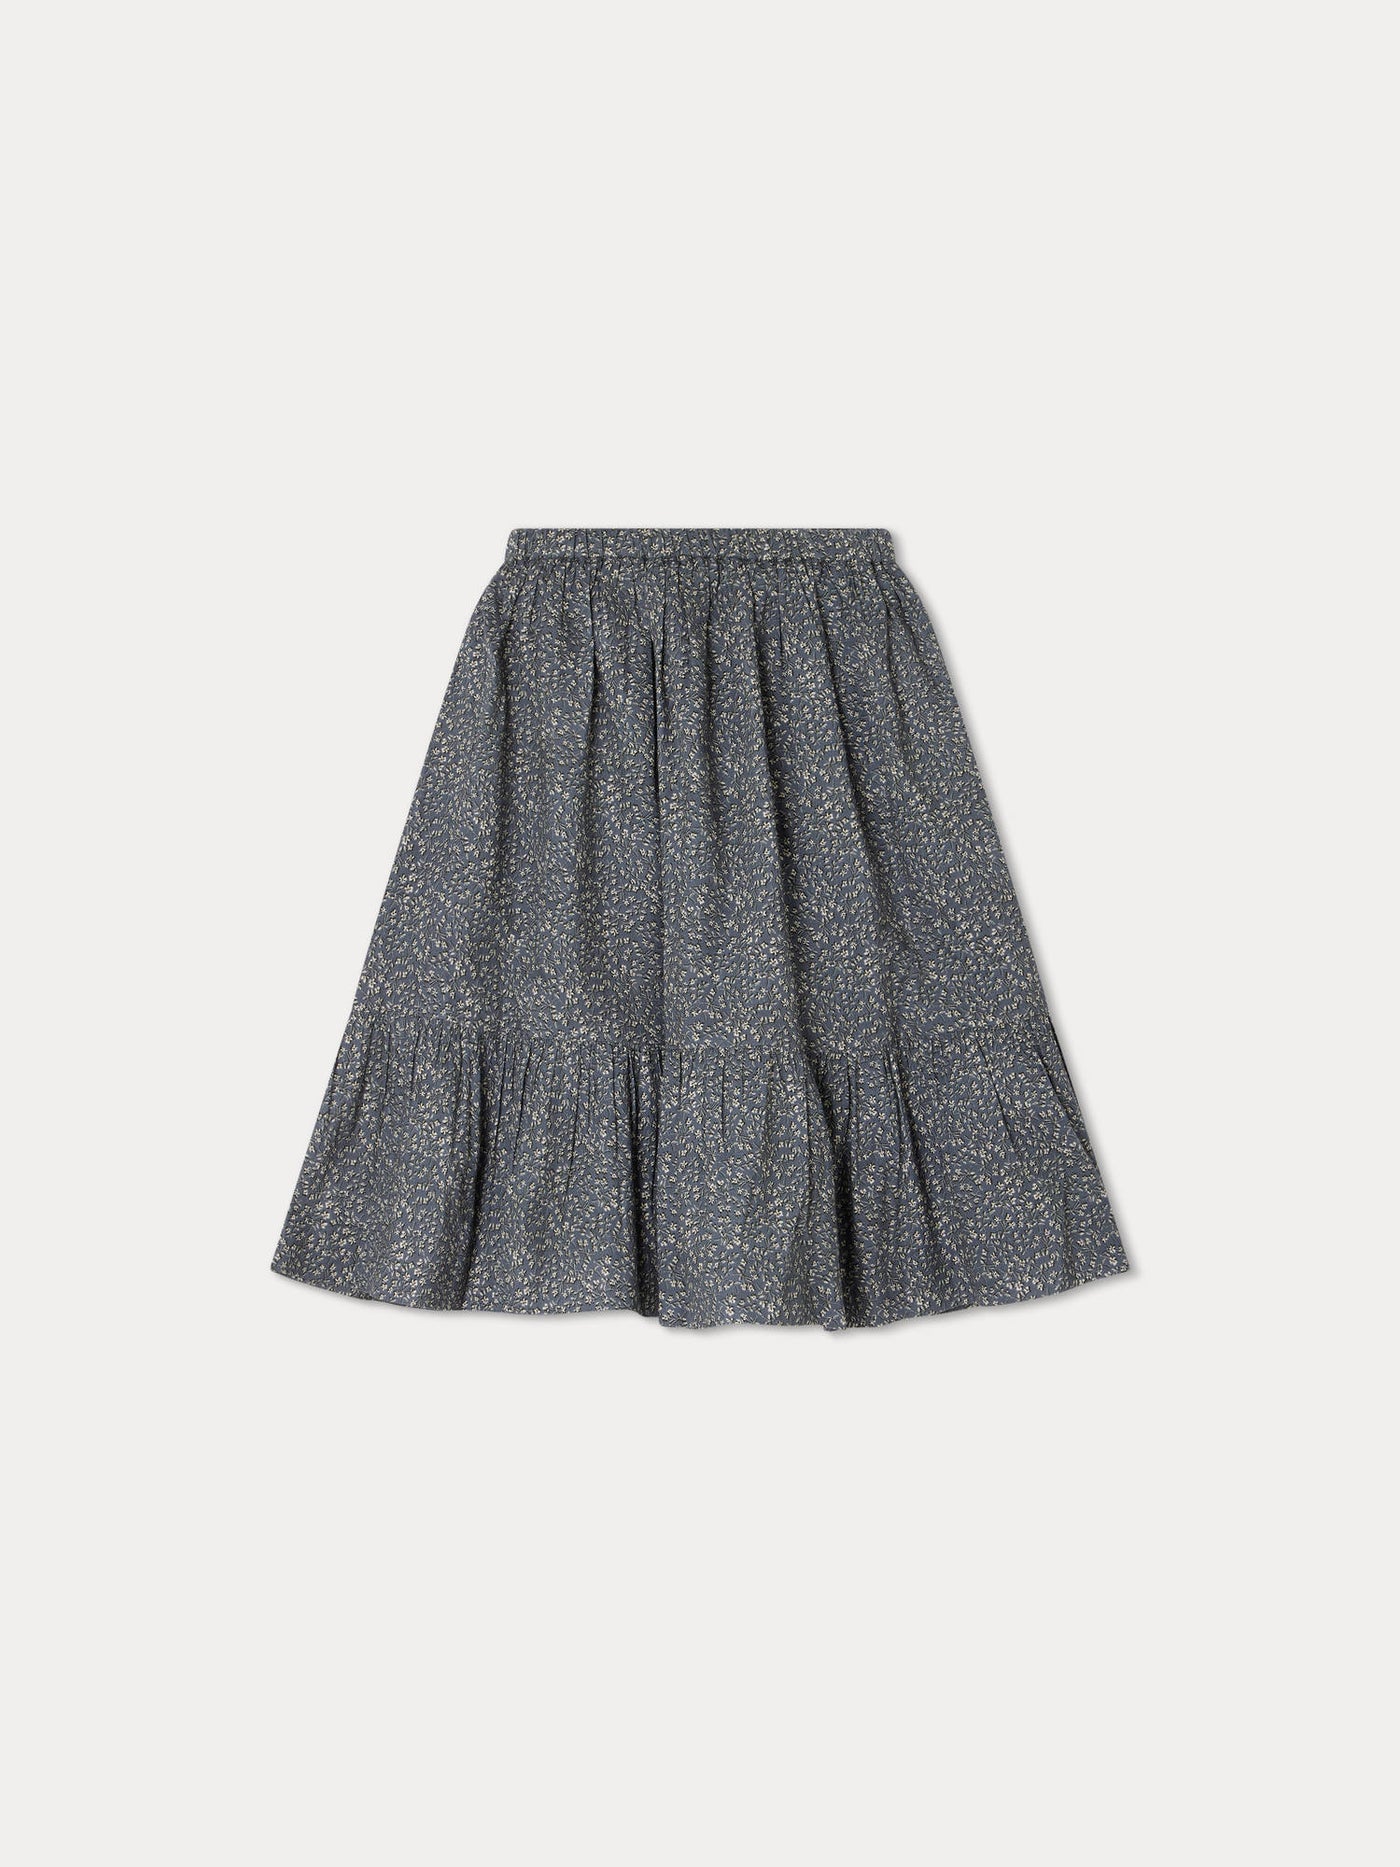 Daisy Skirt slate grey